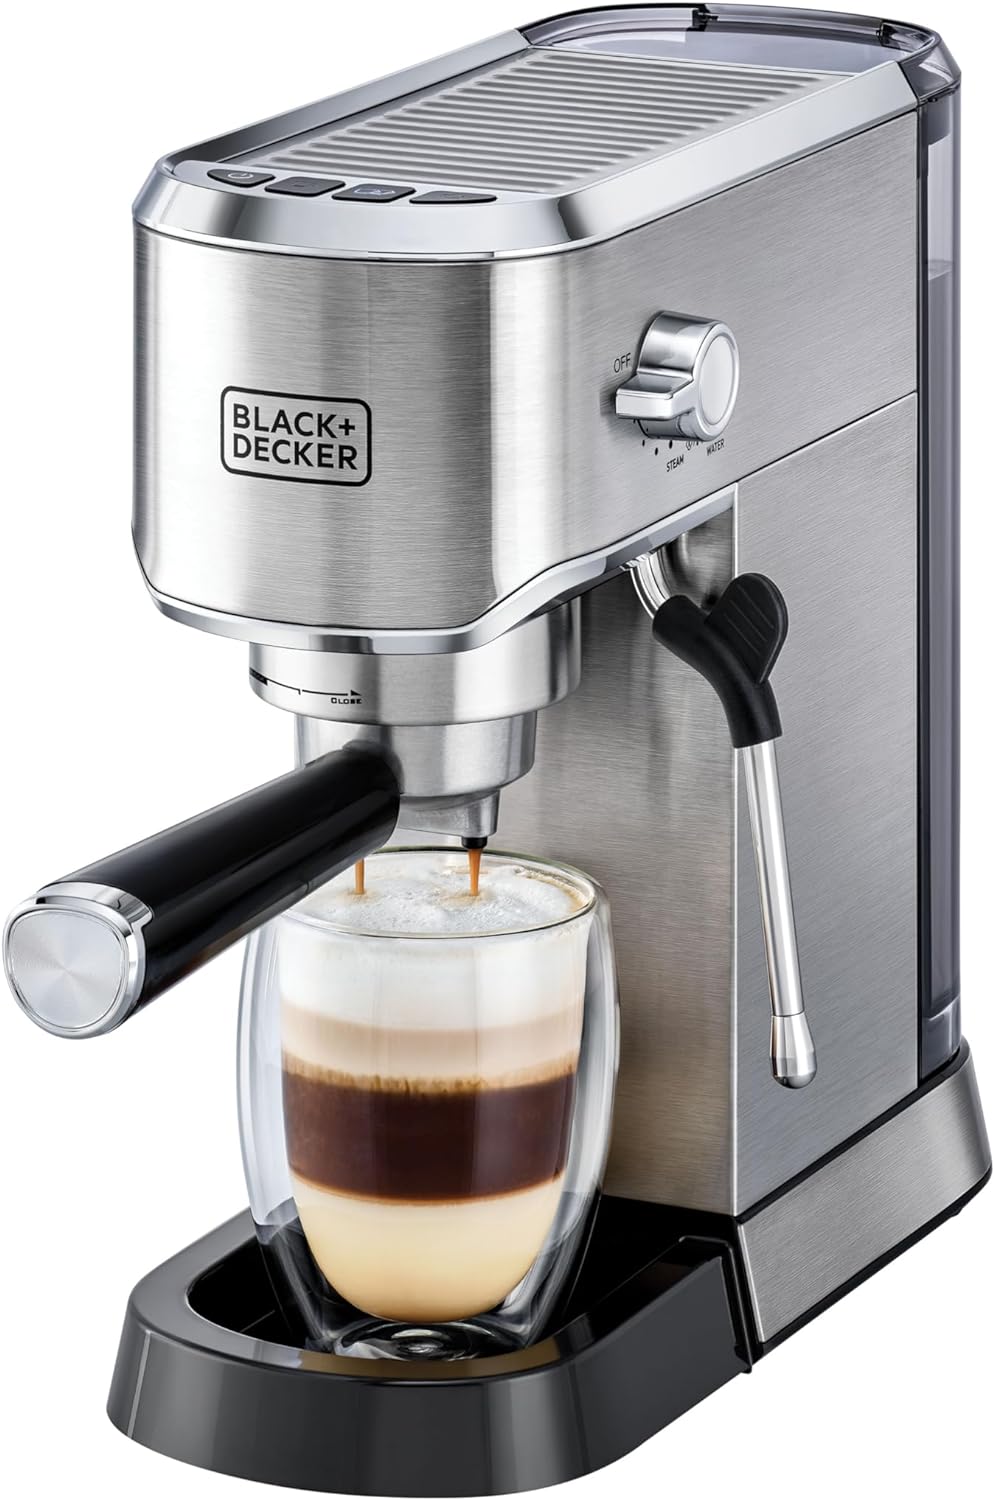 دستگاه قهوه ساز اسپرسو پمپ باریستا بلک اند دکر مدل BLACK+DECKER ECM150 - ارسال ۱۰ الی ۱۵ روز کاری